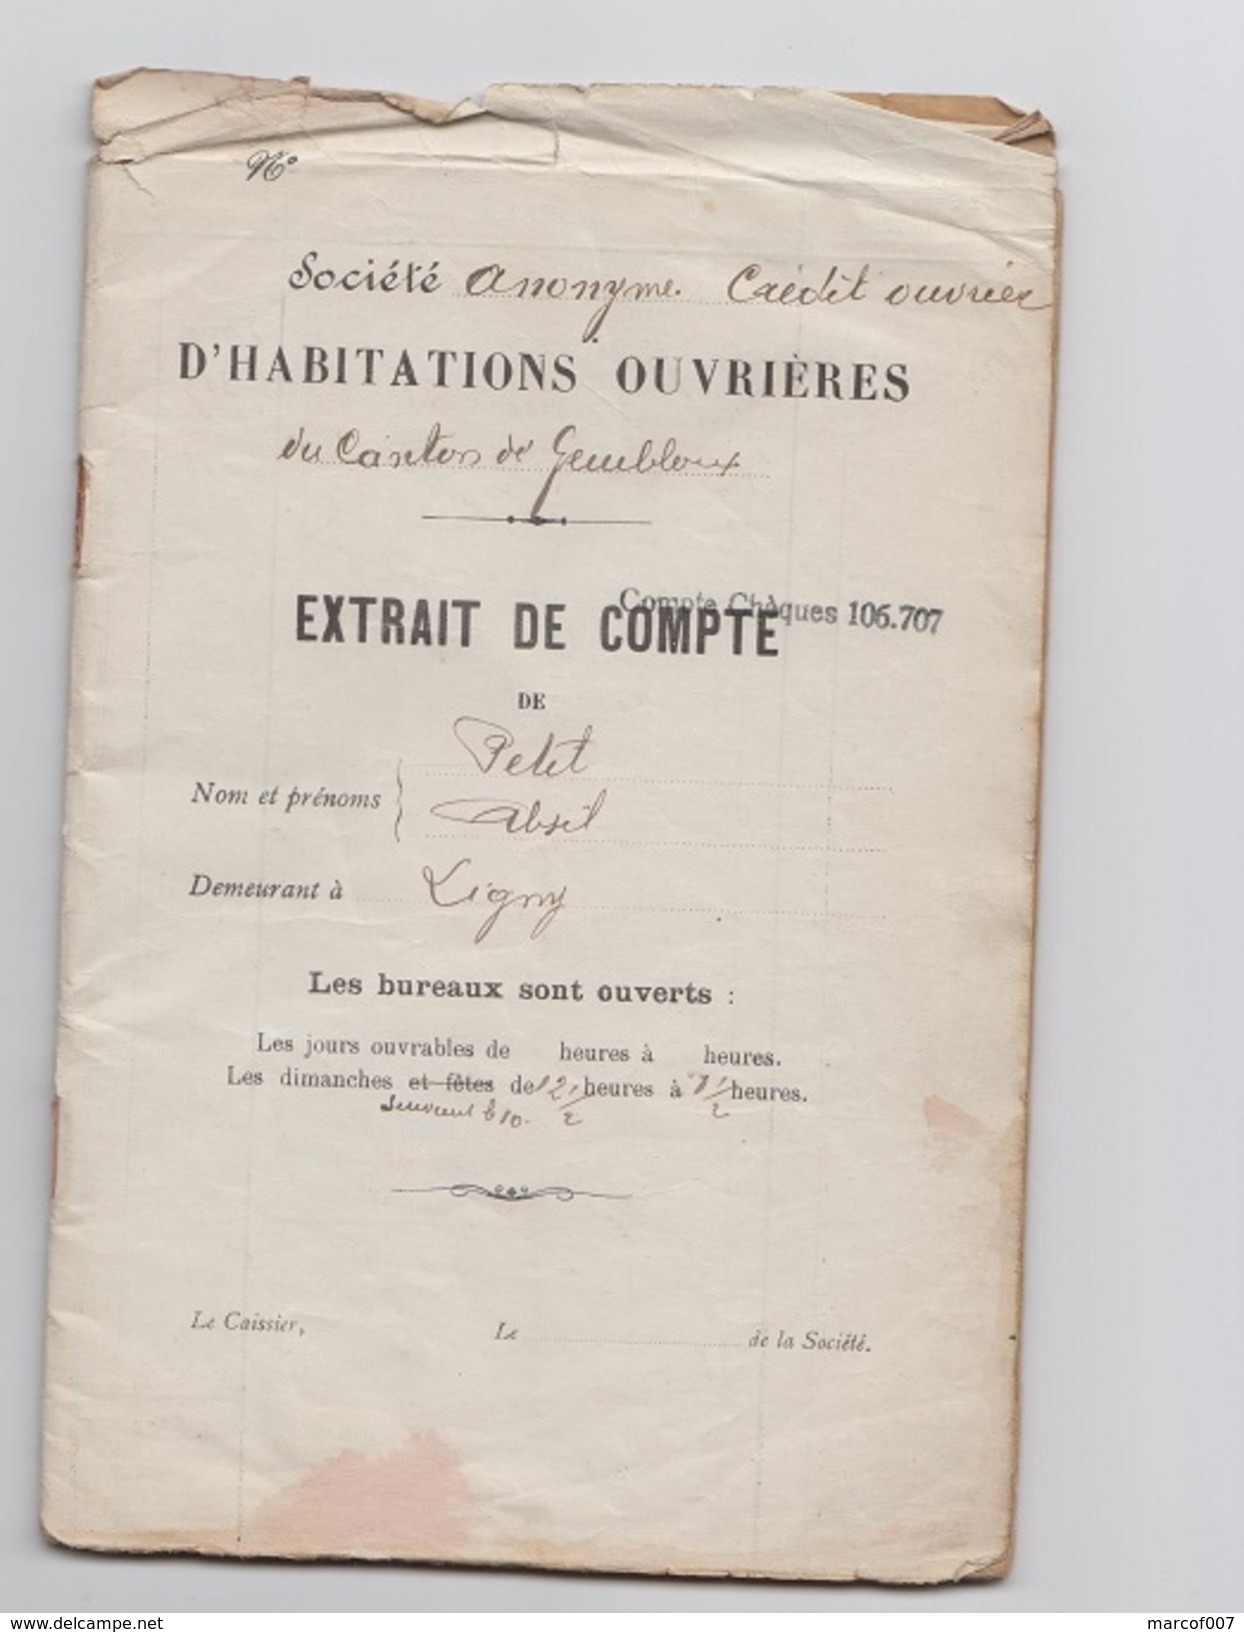 1923 - Societe Anonyme Credit Ouvrier - Extrait De Compte - Mr PETIT - LIGNY - Bank & Versicherung